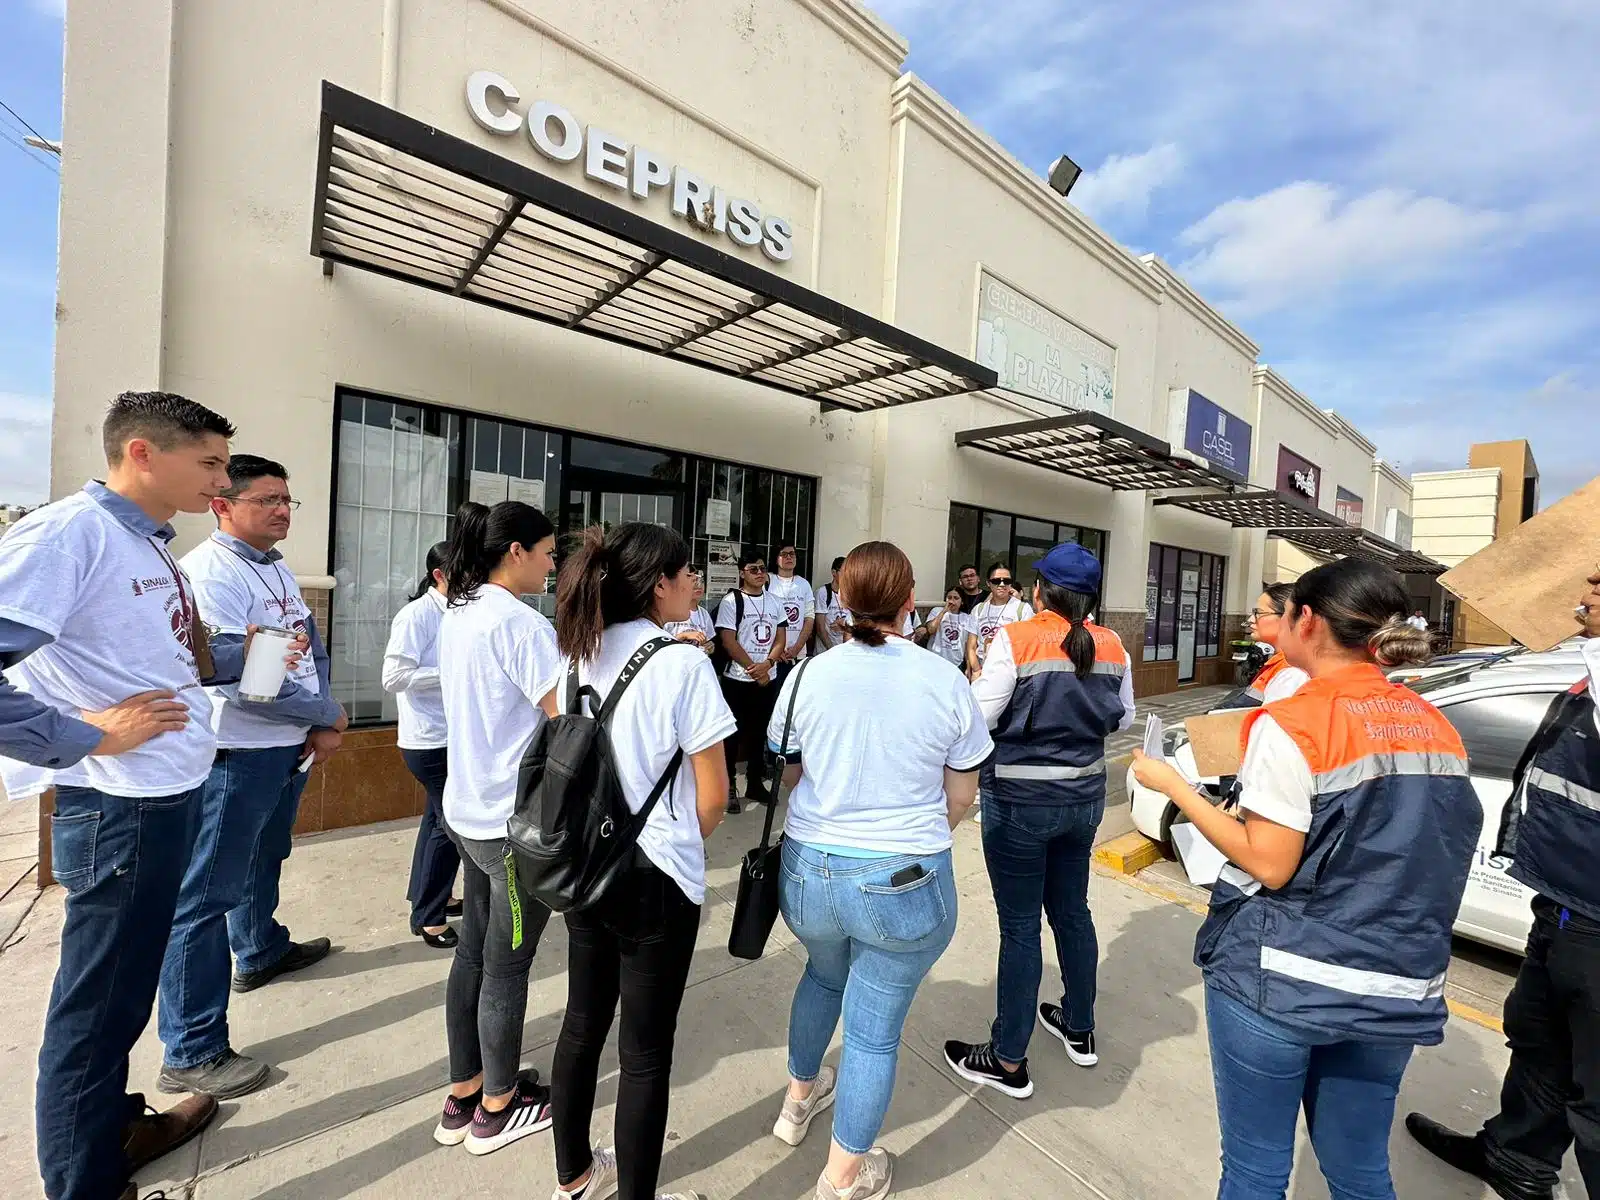 Verificadores de Coepriss reunidos antes de visitar a comerciantes de Guasave en el marco del Día Mundial de la Inocuidad Alimentaria